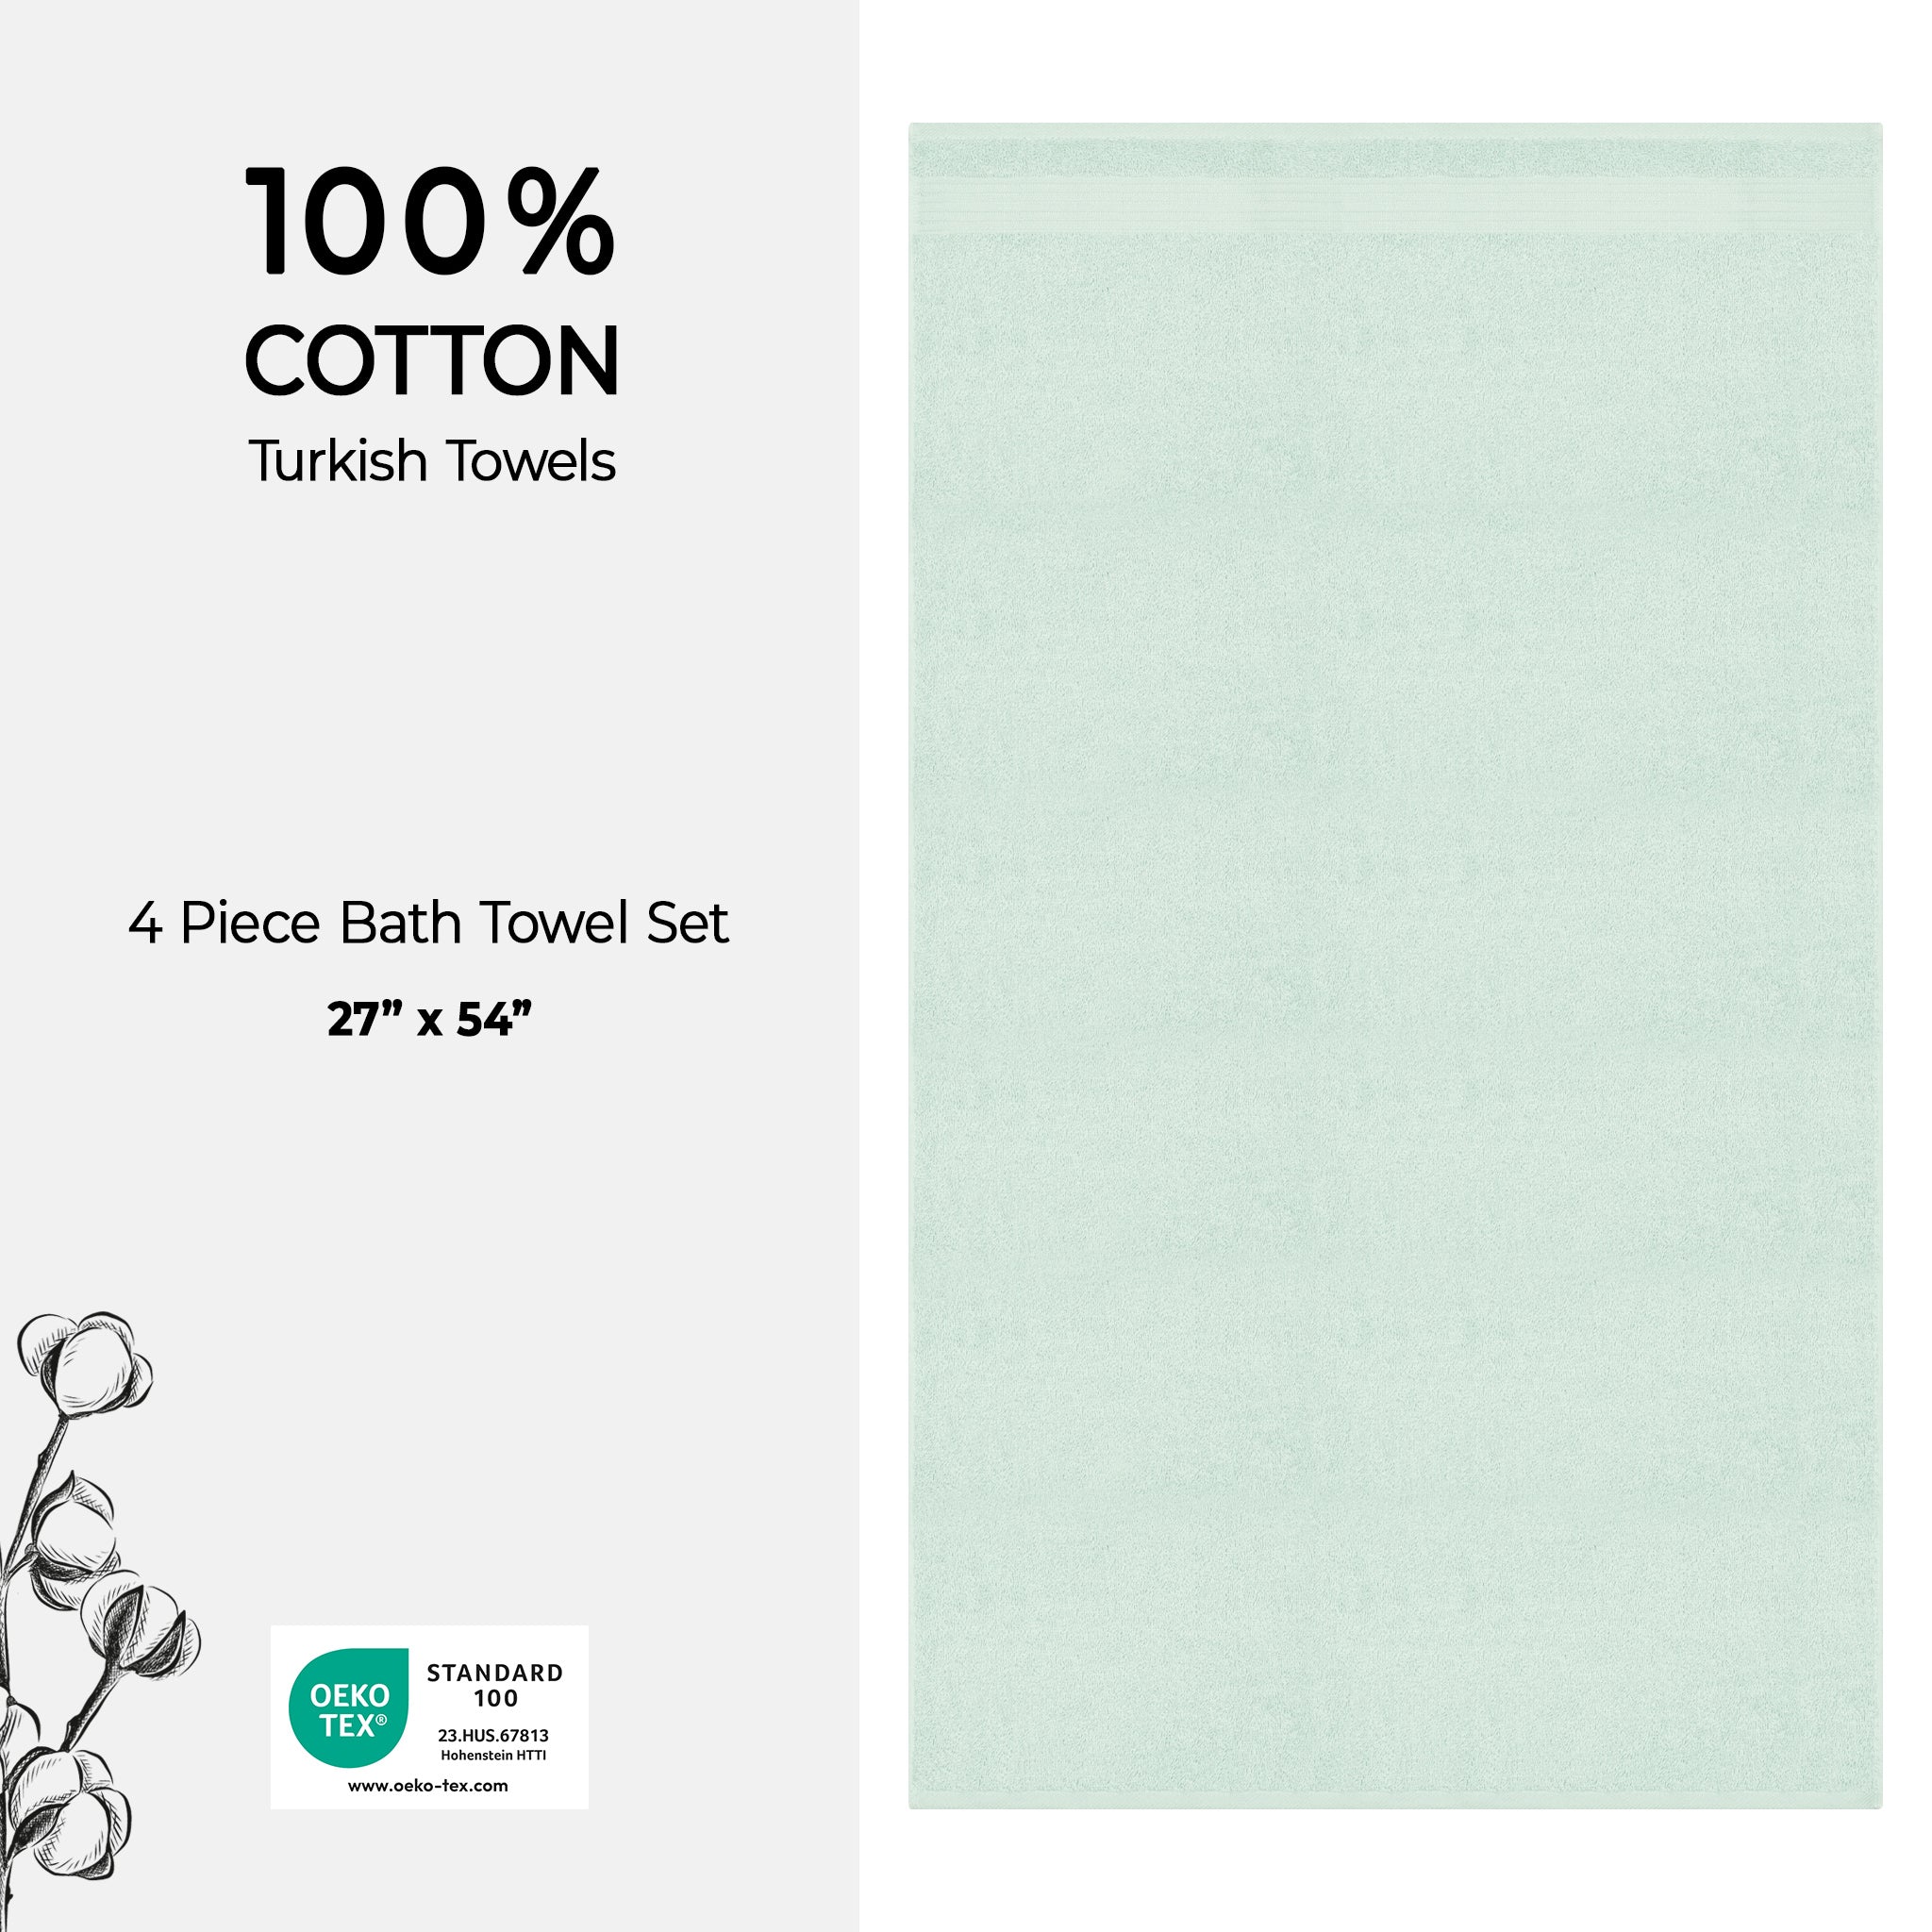 American Soft Linen Bekos 100% Cotton Turkish Towels, 4 Piece Bath Towel Set -mint-04